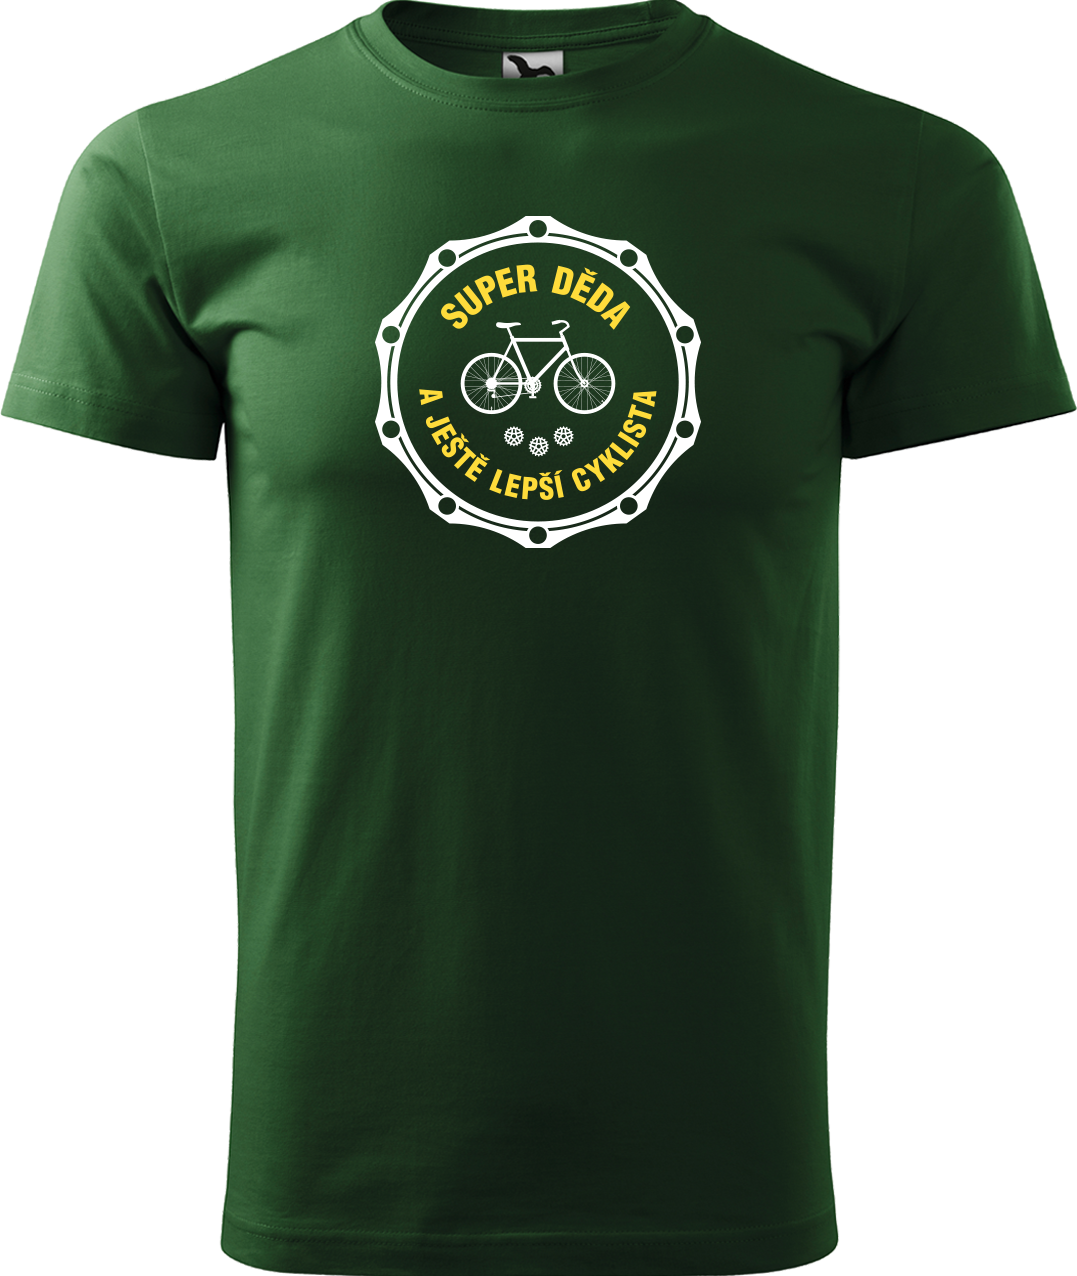 Pánské tričko pro cyklistu - Super děda a ještě lepší cyklista Velikost: 3XL, Barva: Lahvově zelená (06)